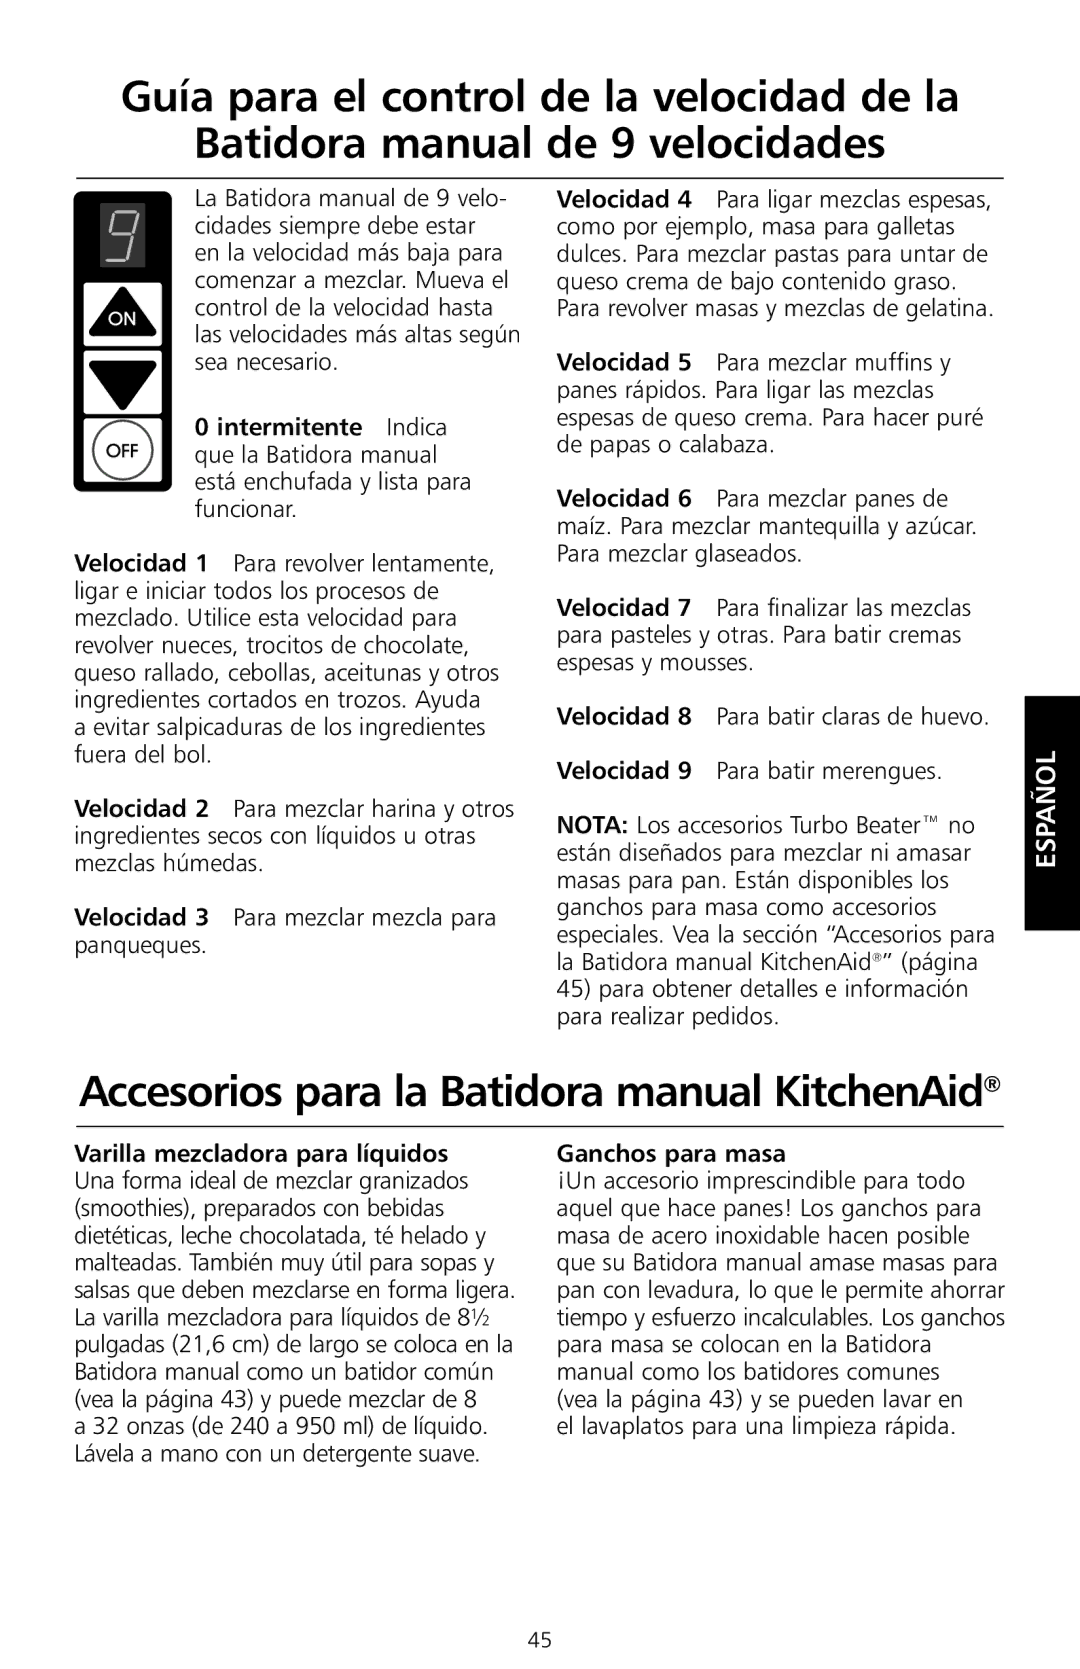 KitchenAid KHM7T Accesorios para la Batidora manual KitchenAid, Ganchos para masa, El lavaplatos para una limpieza rápida 